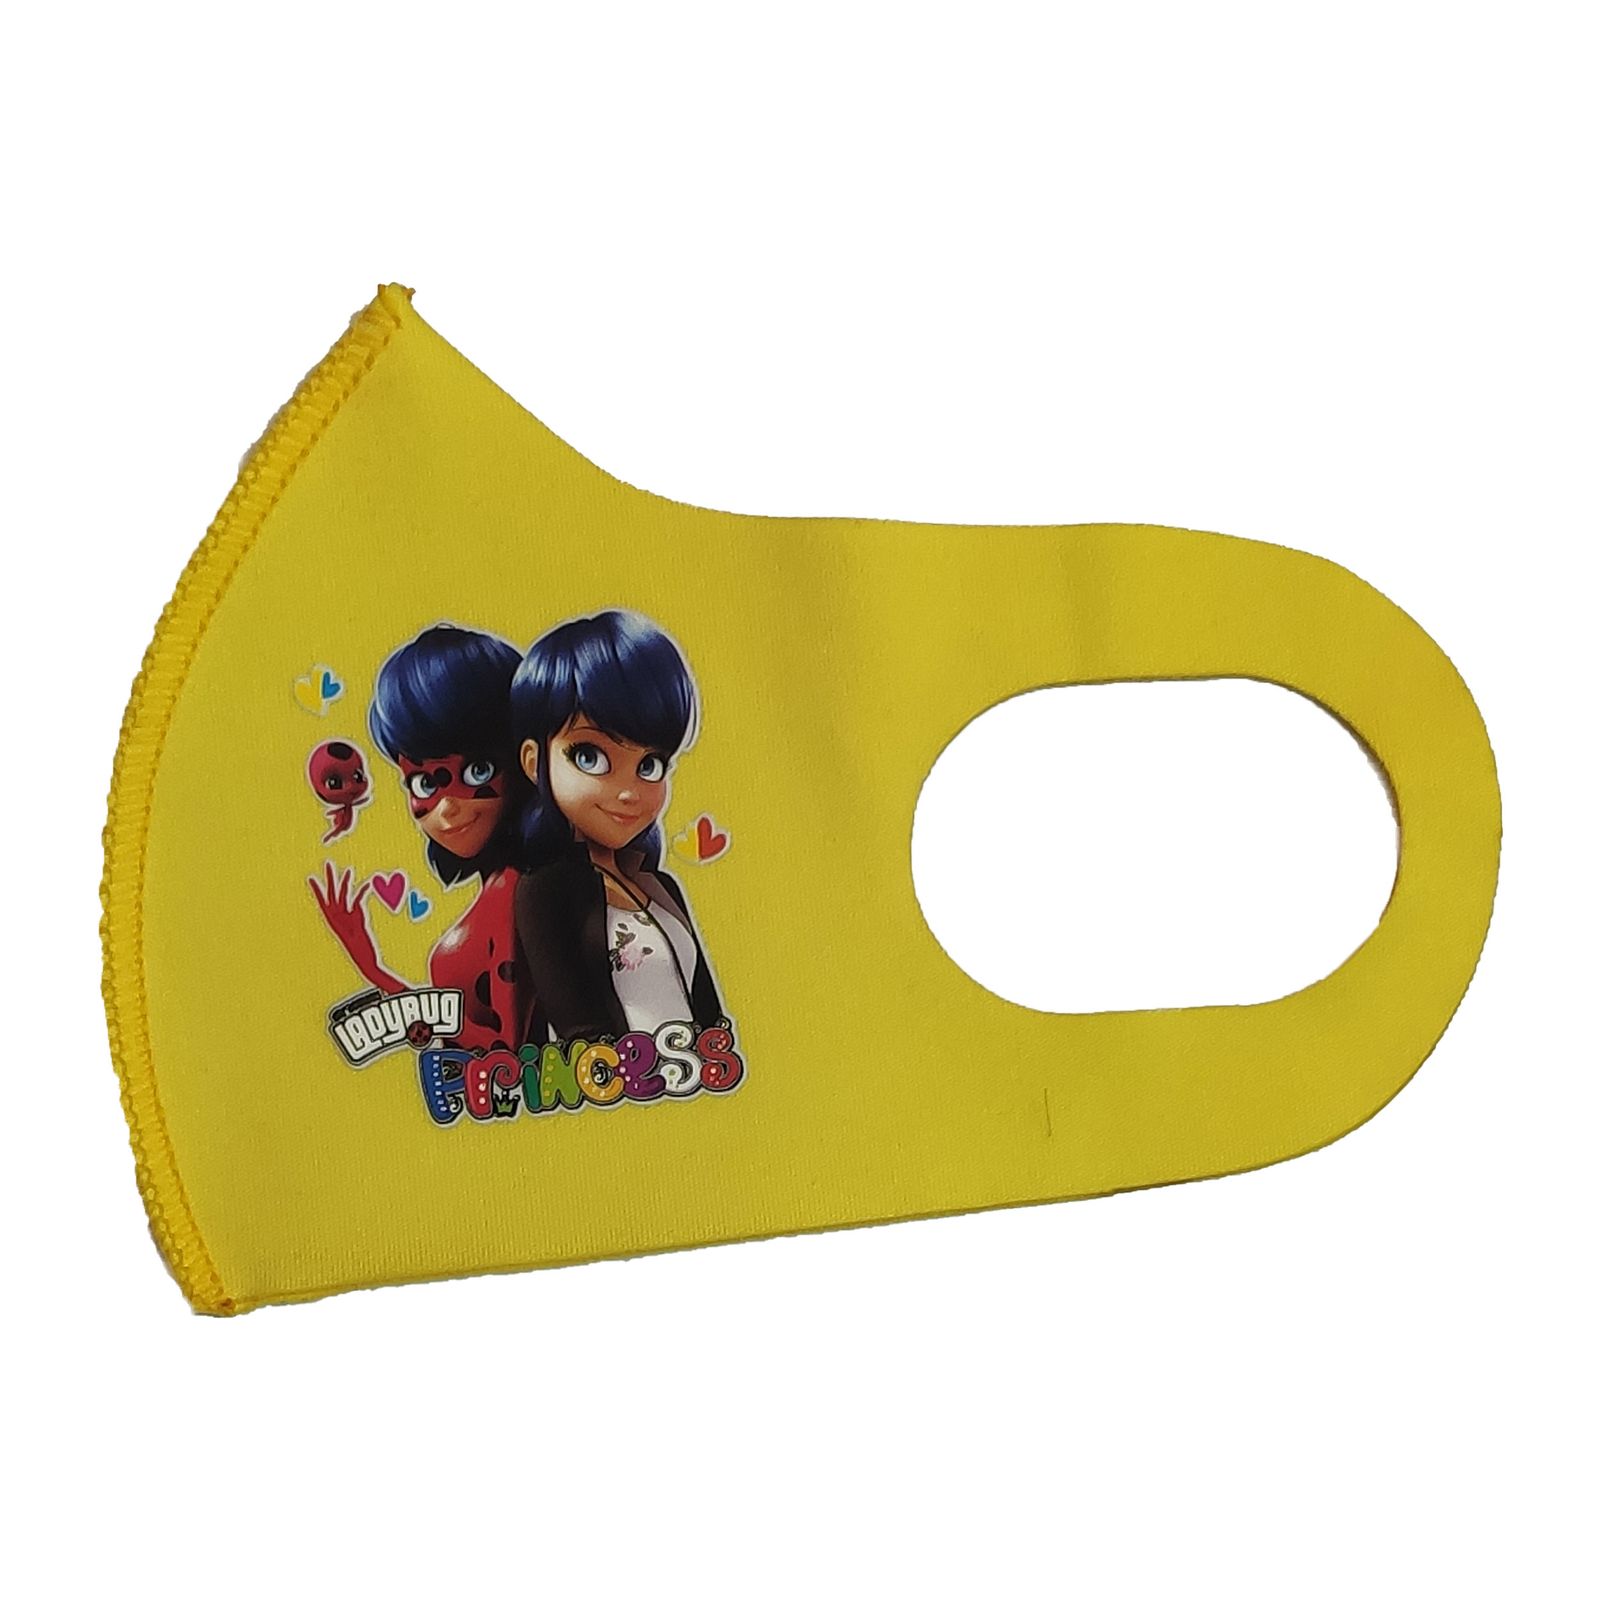 ماسک تزیینی بچگانه طرح PRINCESS کد 30696 رنگ زرد -  - 1